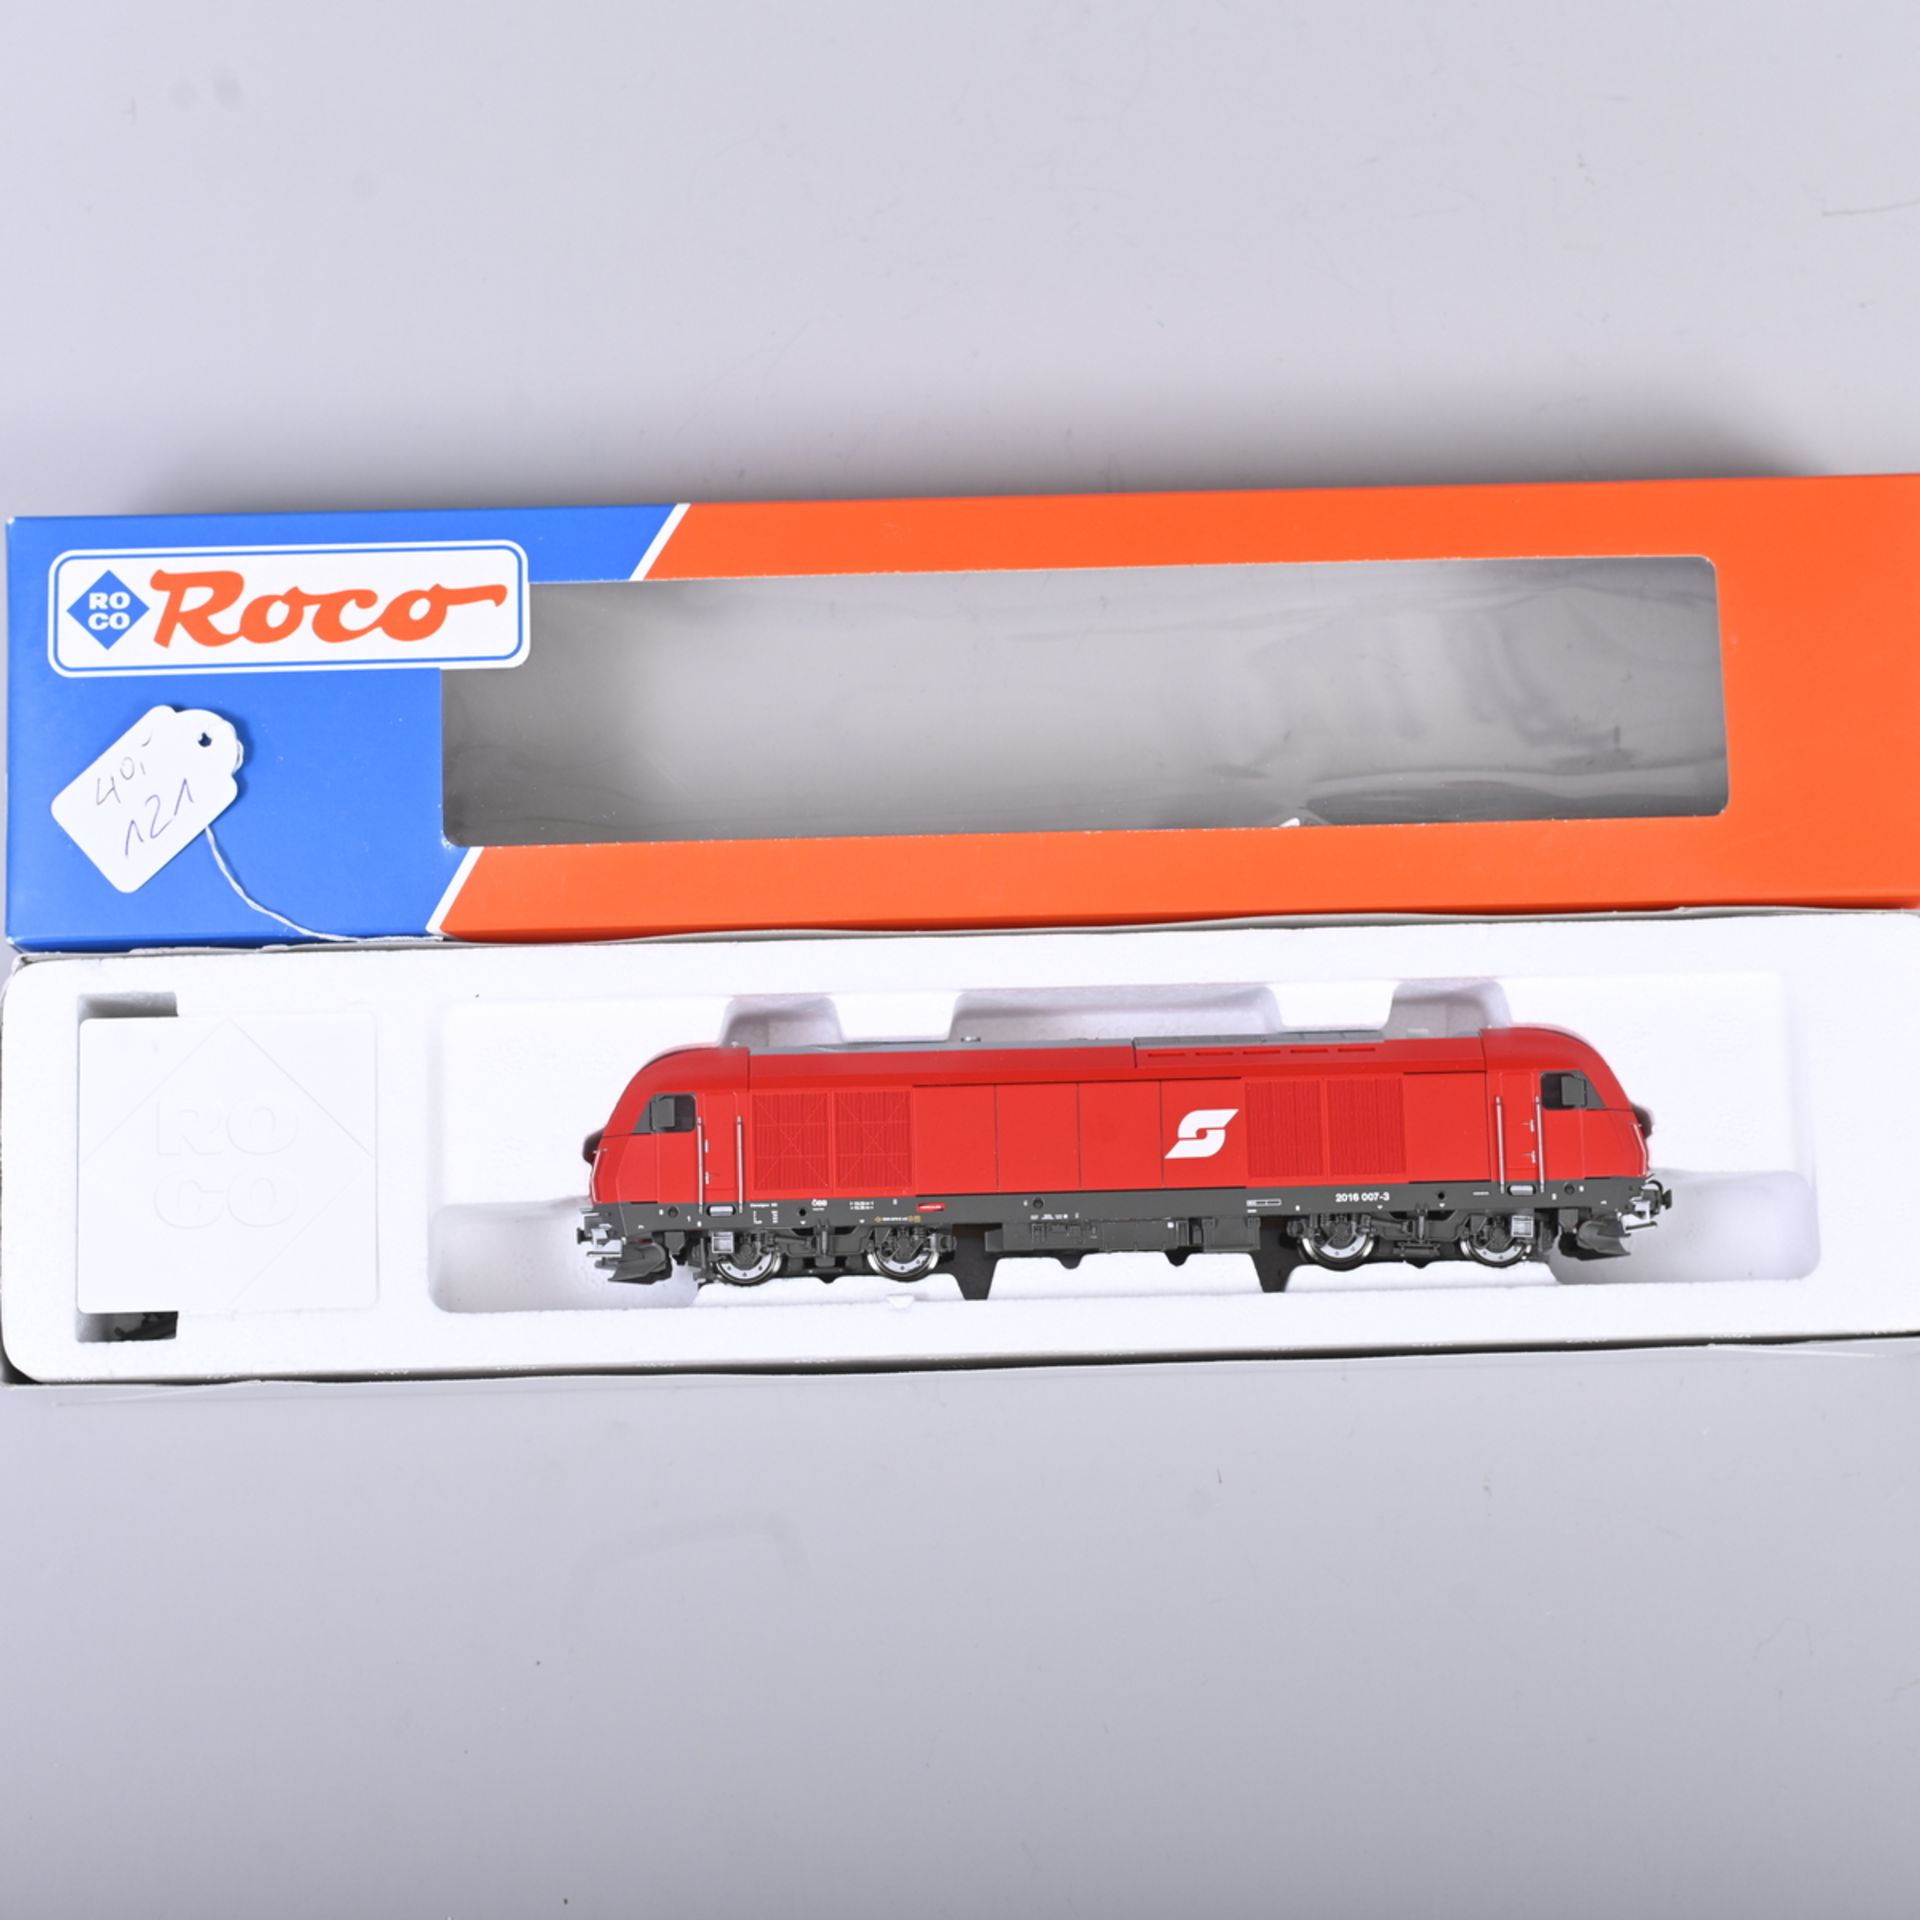 ROCO Diesellokomotive, Spur H0, Nr. 63400, ÖBB 2016 007-3, sehr gut erhalten, im OK